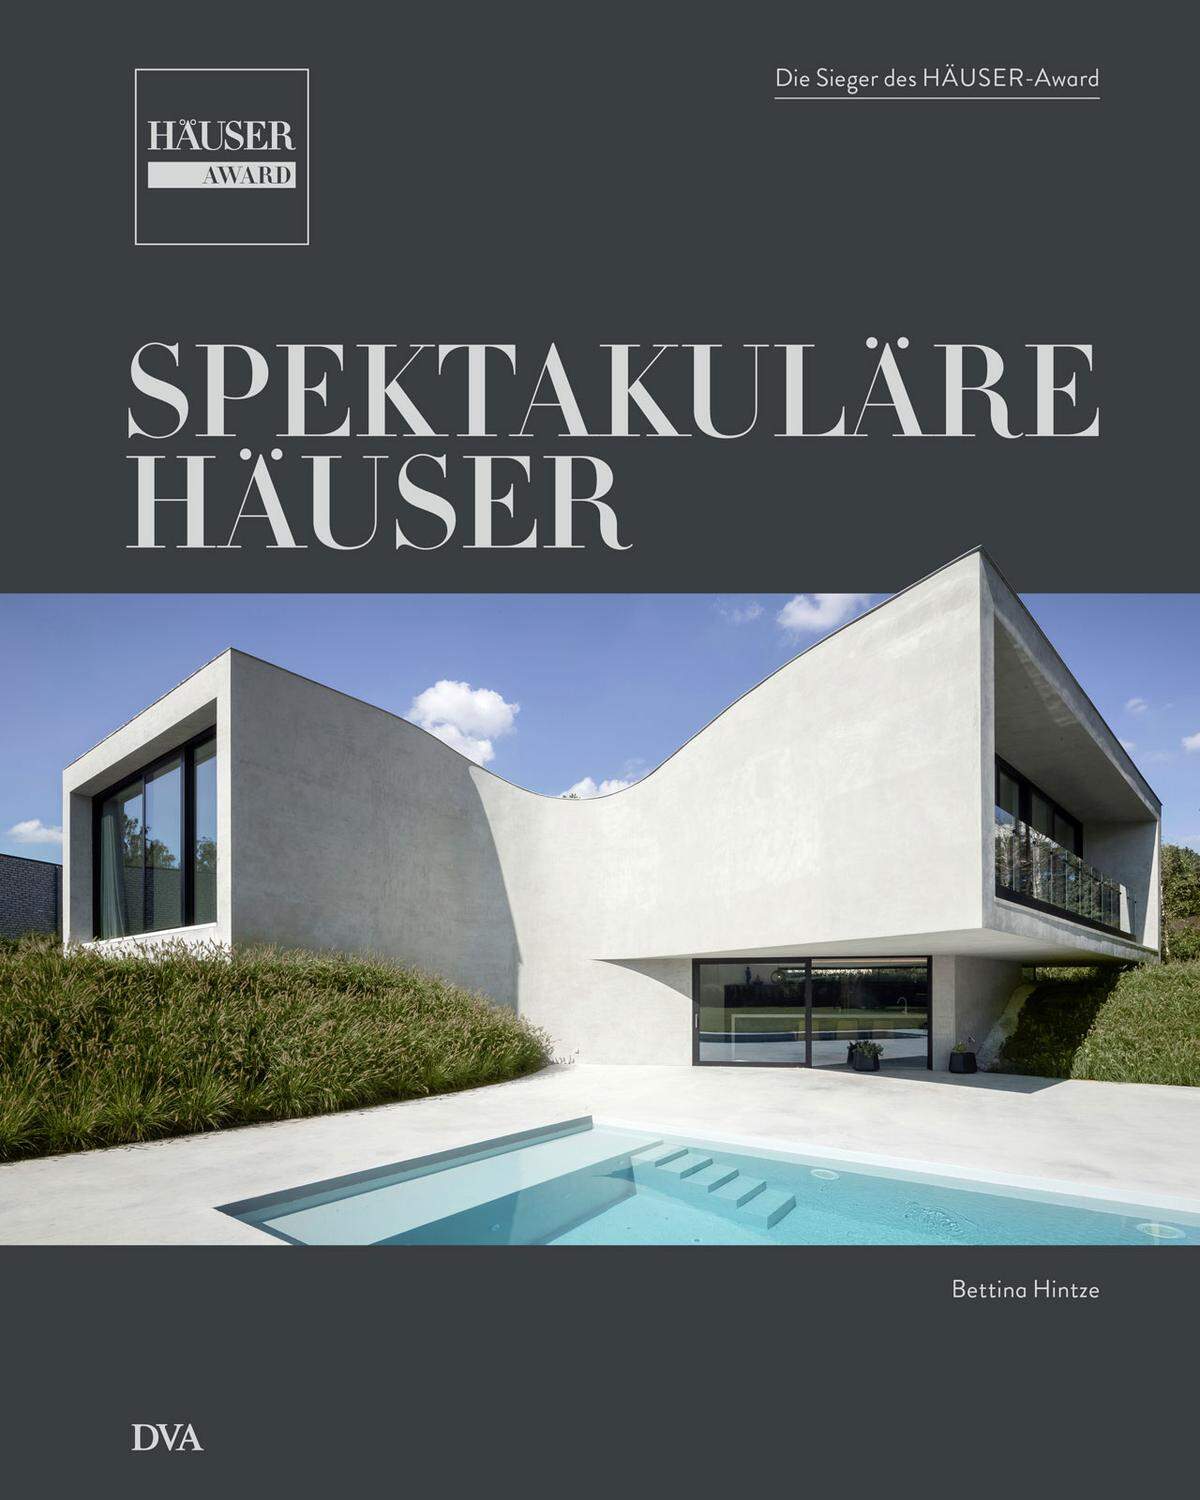 Das Buch "Spektakuläre Häuser" dokumentiert die 30 besten Objekte des Häuser Awards 2017. Autorin: Bettina Hintze, 260 Seiten, ISBN: 978-3-421-04048-0. Das Buch erscheint zum Preis von 59,00 Euro bei DVA, München.